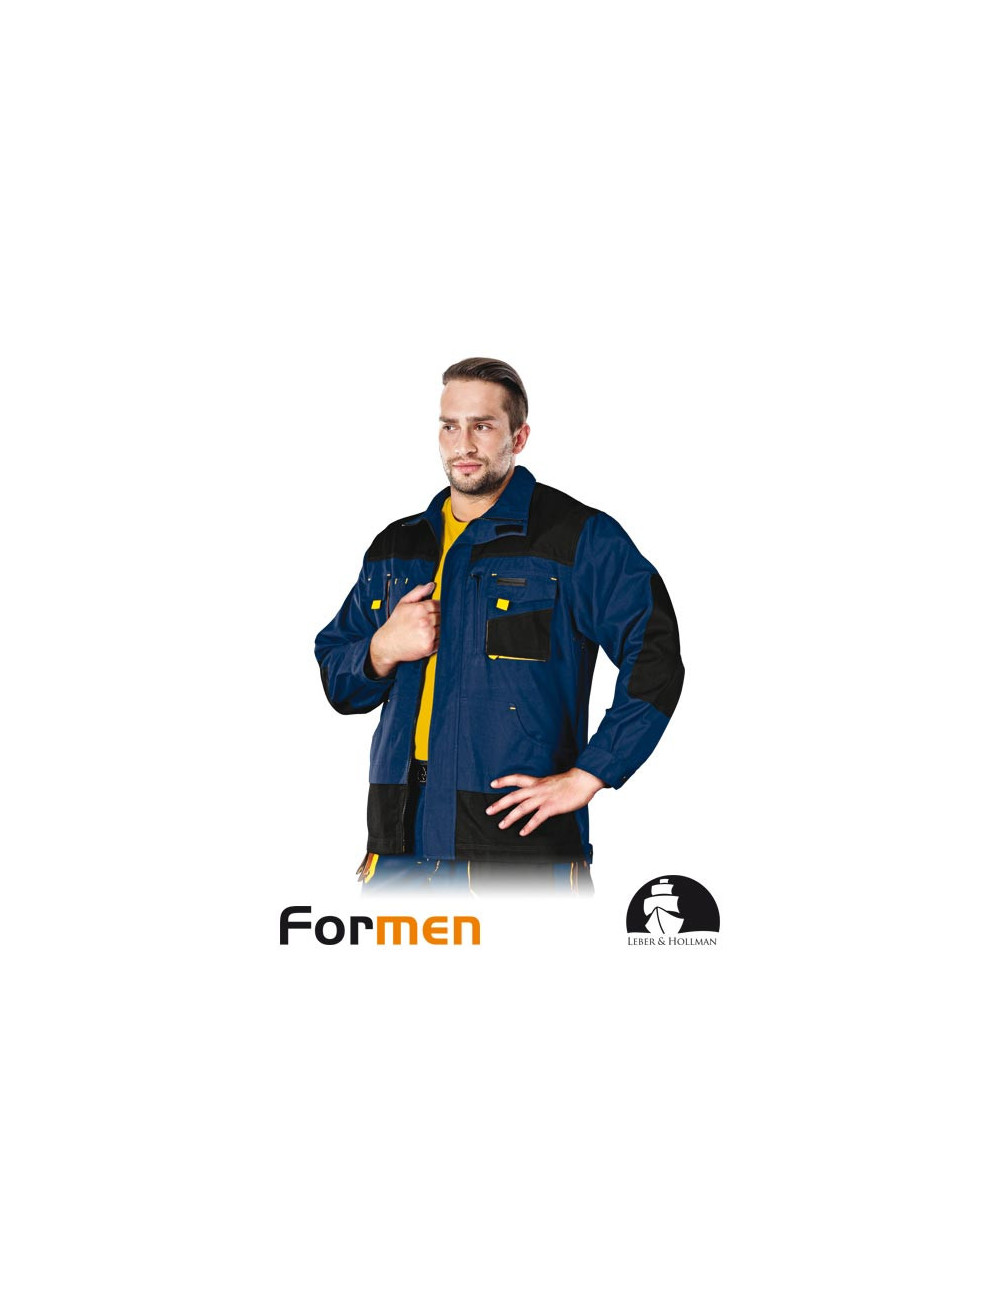 Schutz-Sweatshirt lh-fmn-j gby marineblau-schwarz-gelb Leber&amp;hollman